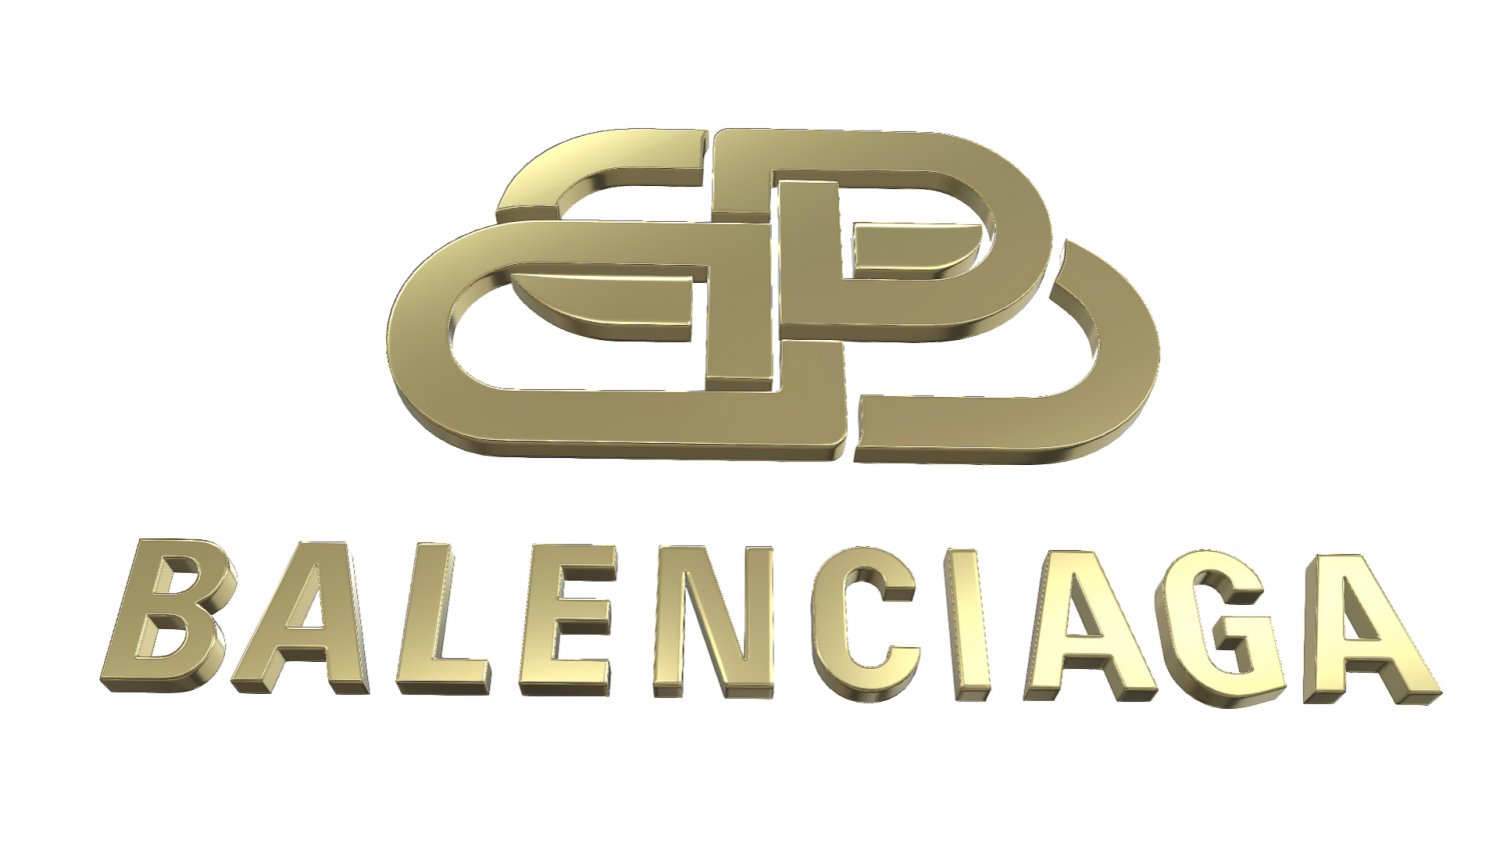 logo of balenciaga